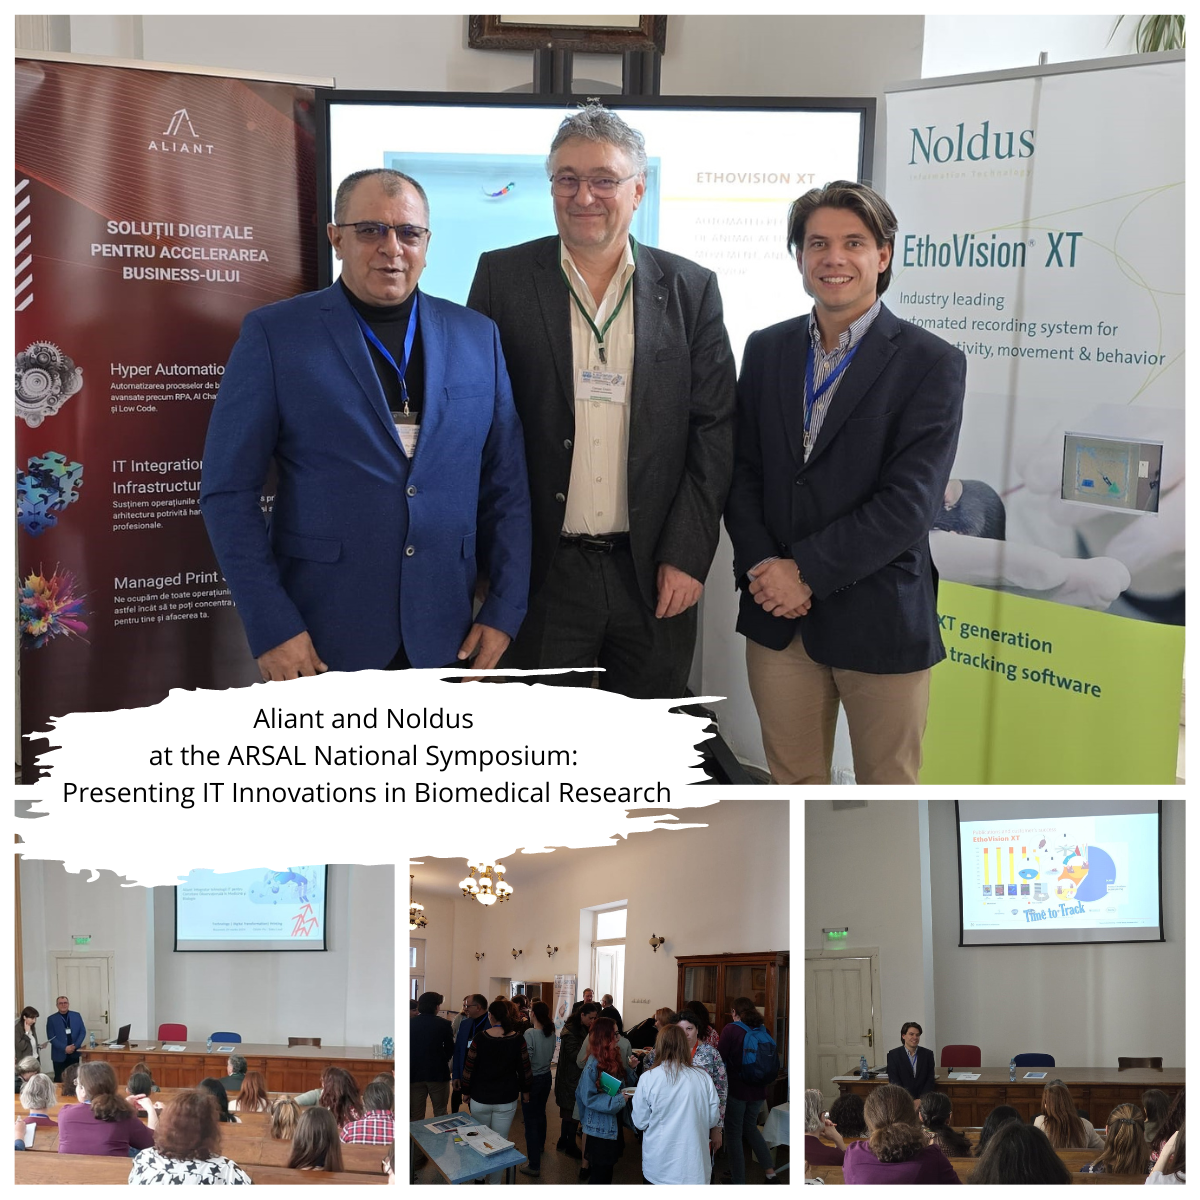 Aliant & Noldus dezvăluie inovații IT în cercetarea biomedicală la Simpozionul ARSAL. Catalin Piu și Tom Pudil prezintă rolul AI în promovarea cercetării, ridicând priceperea științifică a României. Găzduită de Institutul „Victor Babeș”, această colaborare propulsează progrese biomedicale globale.